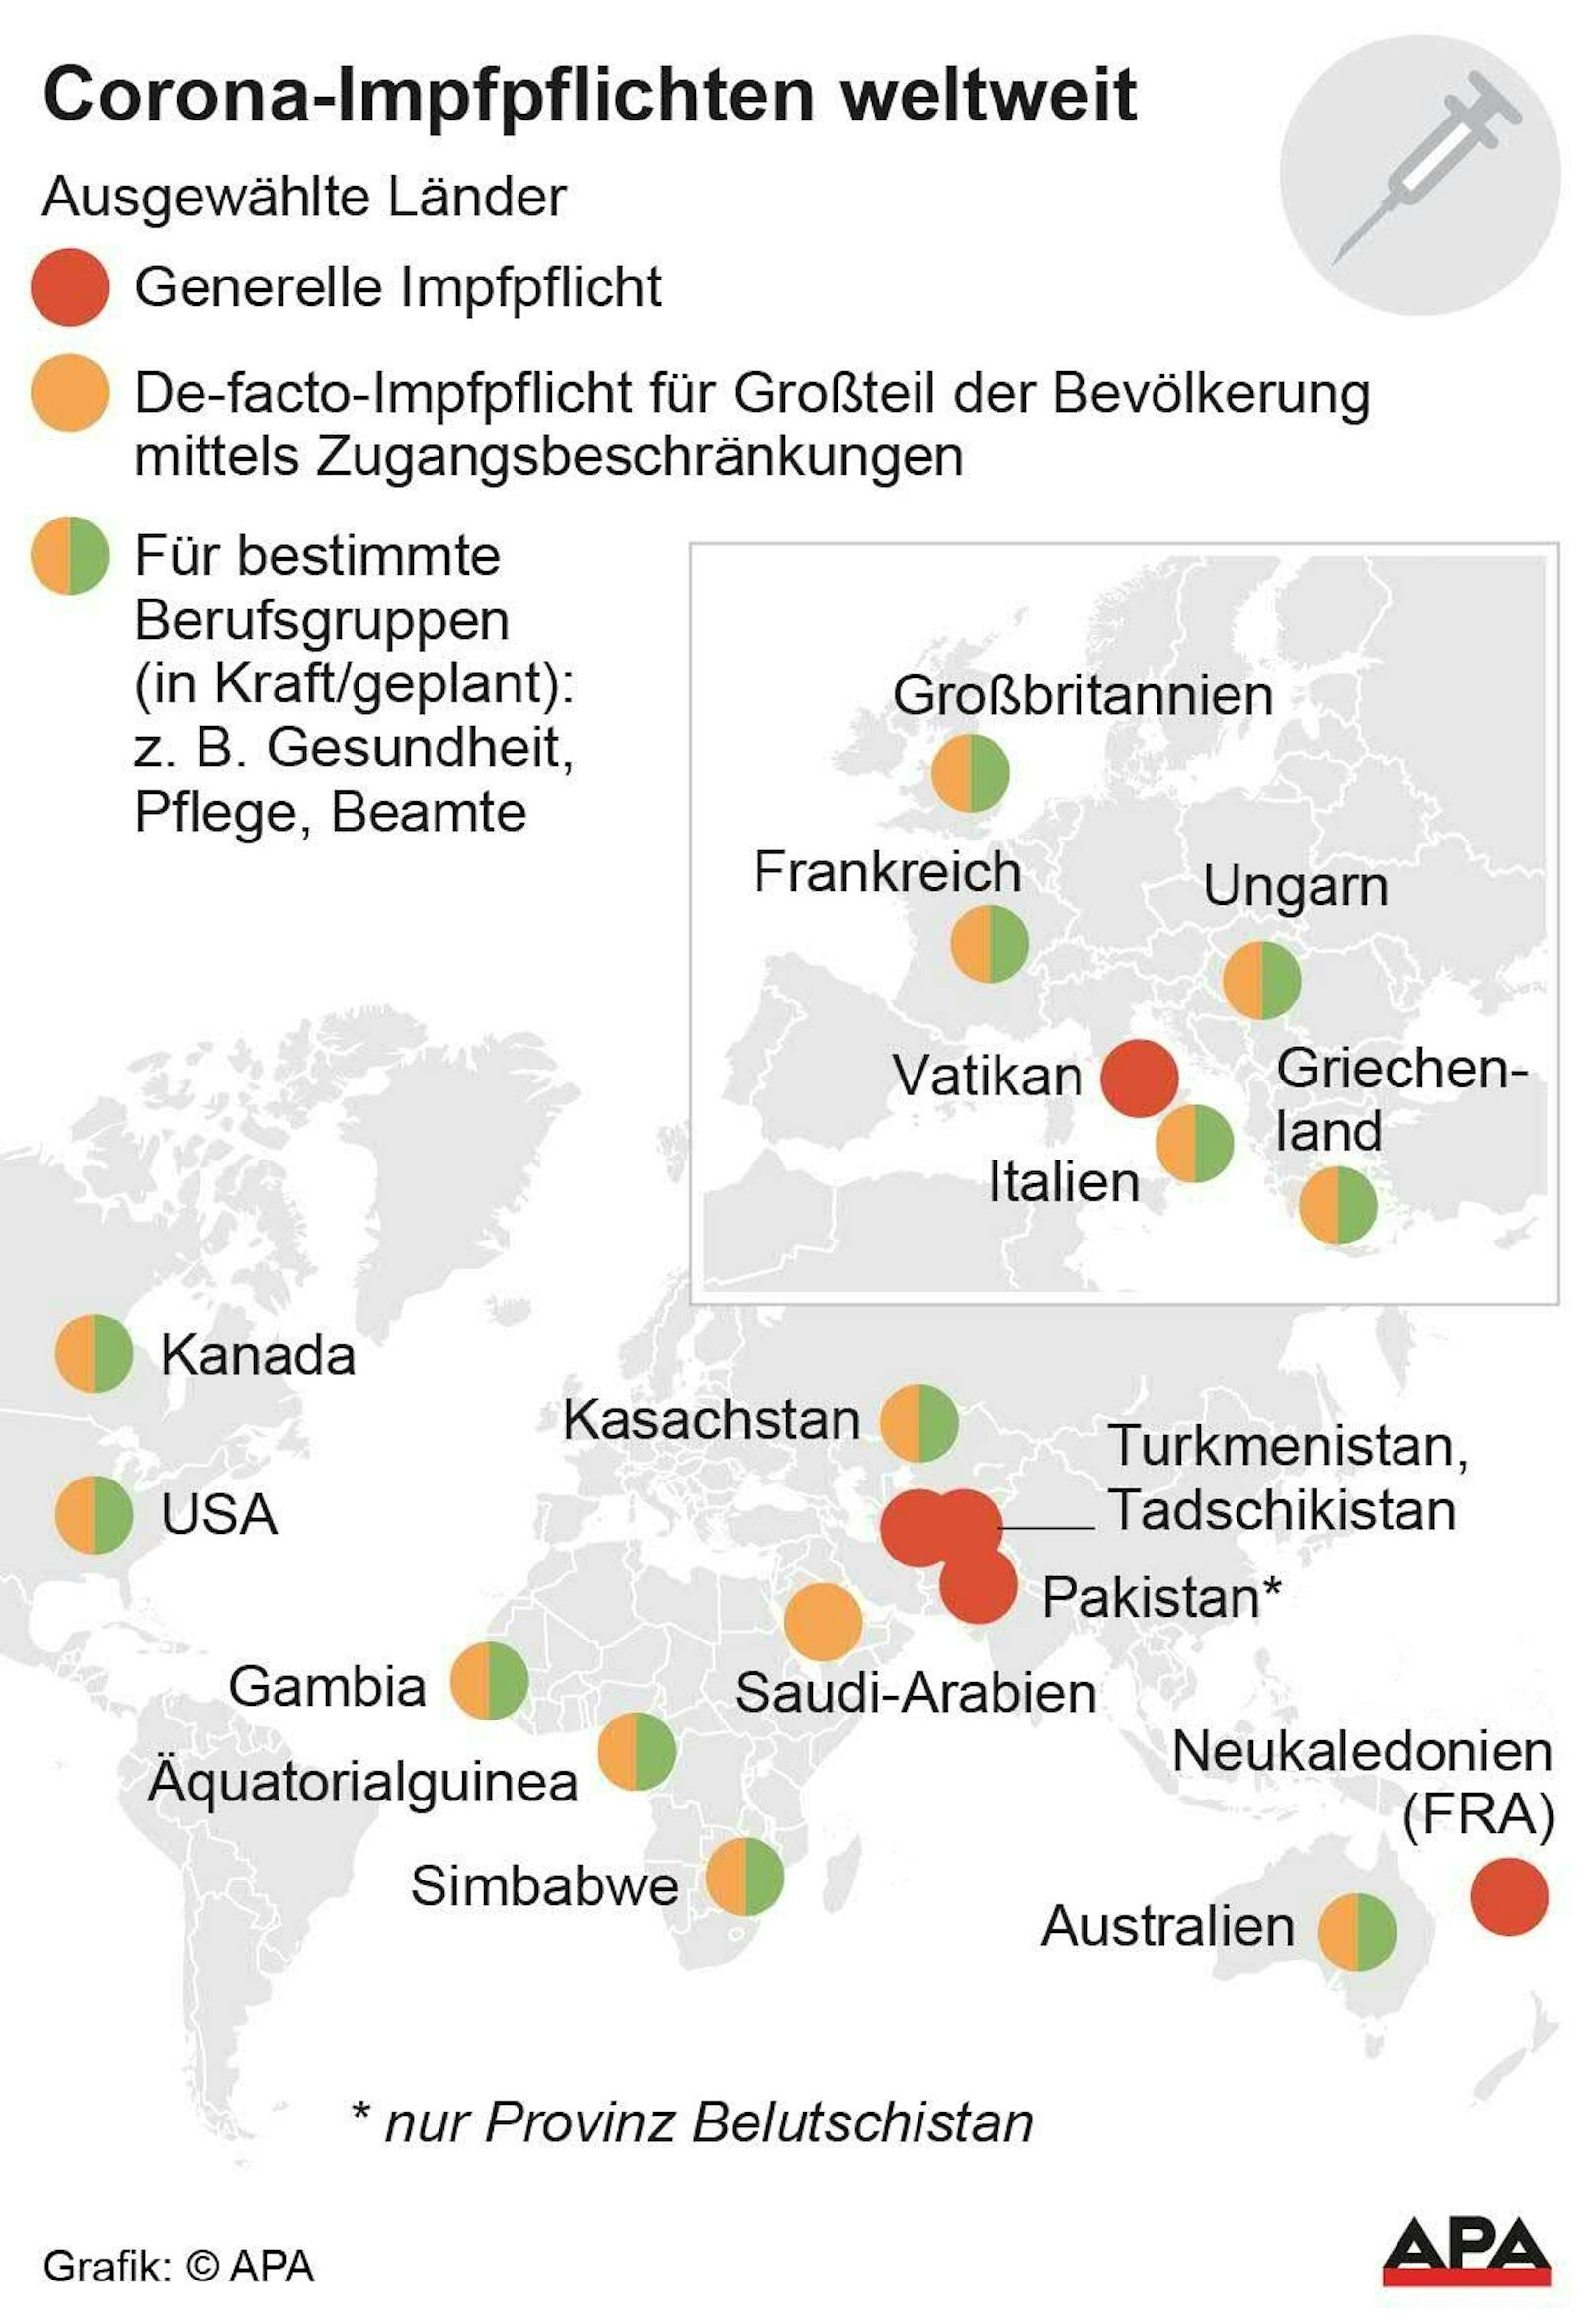 Diese Karte zeigt Länder, in denen es eine generelle, indirekte oder eine für bestimmte Berufsgruppen Impfpflicht gibt.